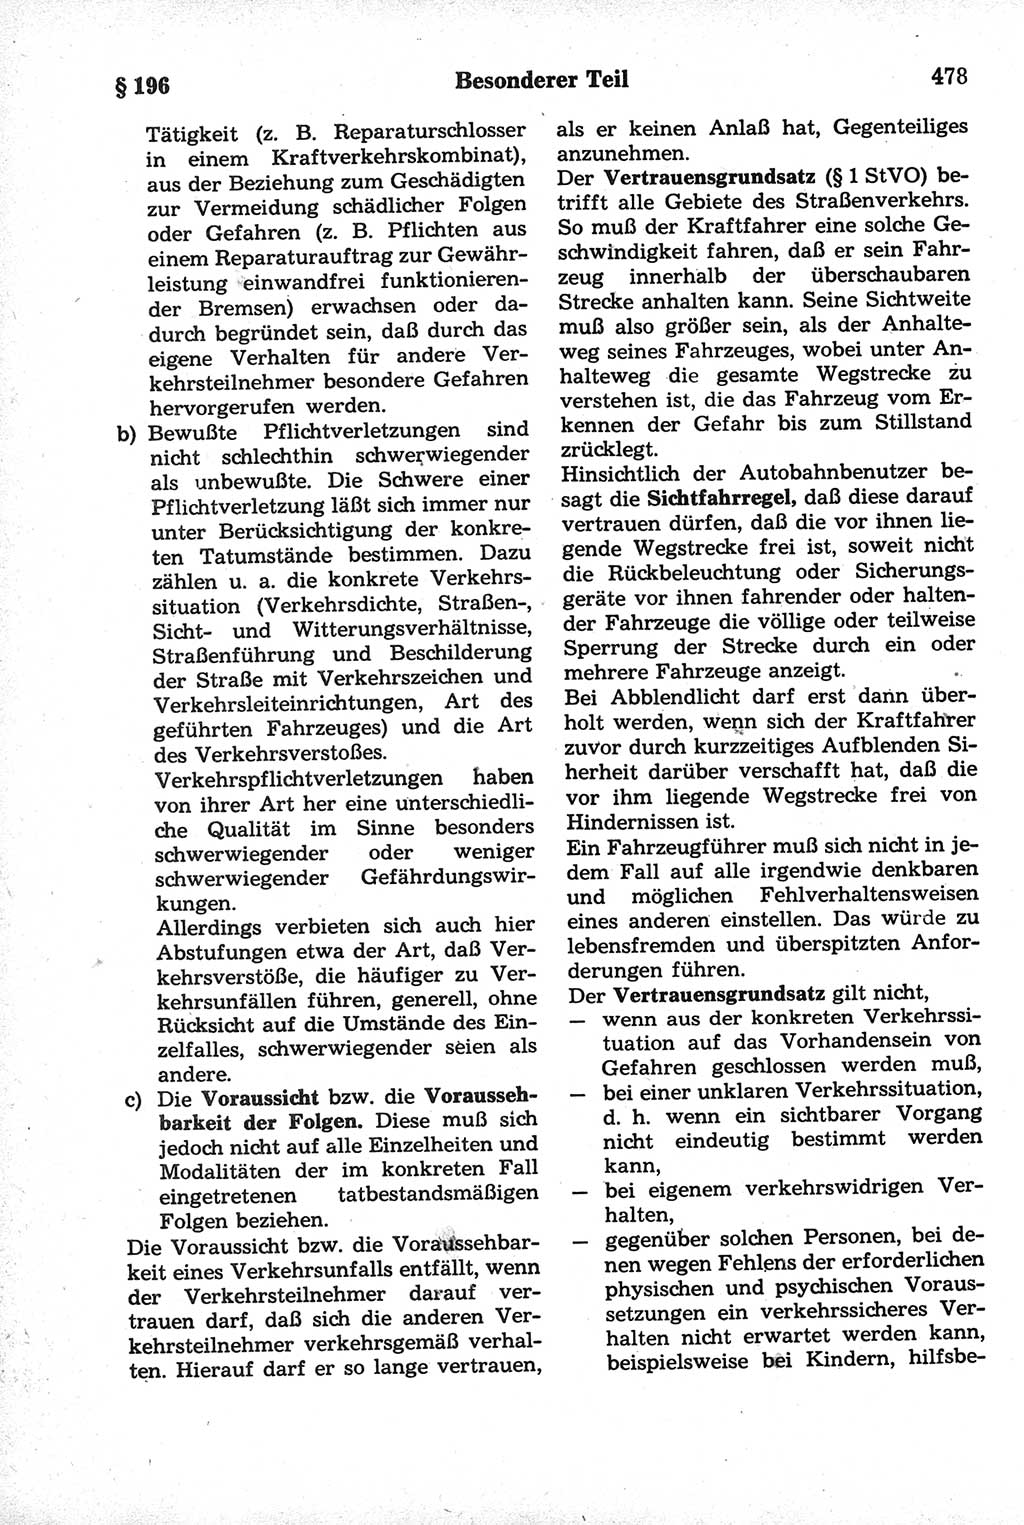 Strafrecht der Deutschen Demokratischen Republik (DDR), Kommentar zum Strafgesetzbuch (StGB) 1981, Seite 478 (Strafr. DDR Komm. StGB 1981, S. 478)